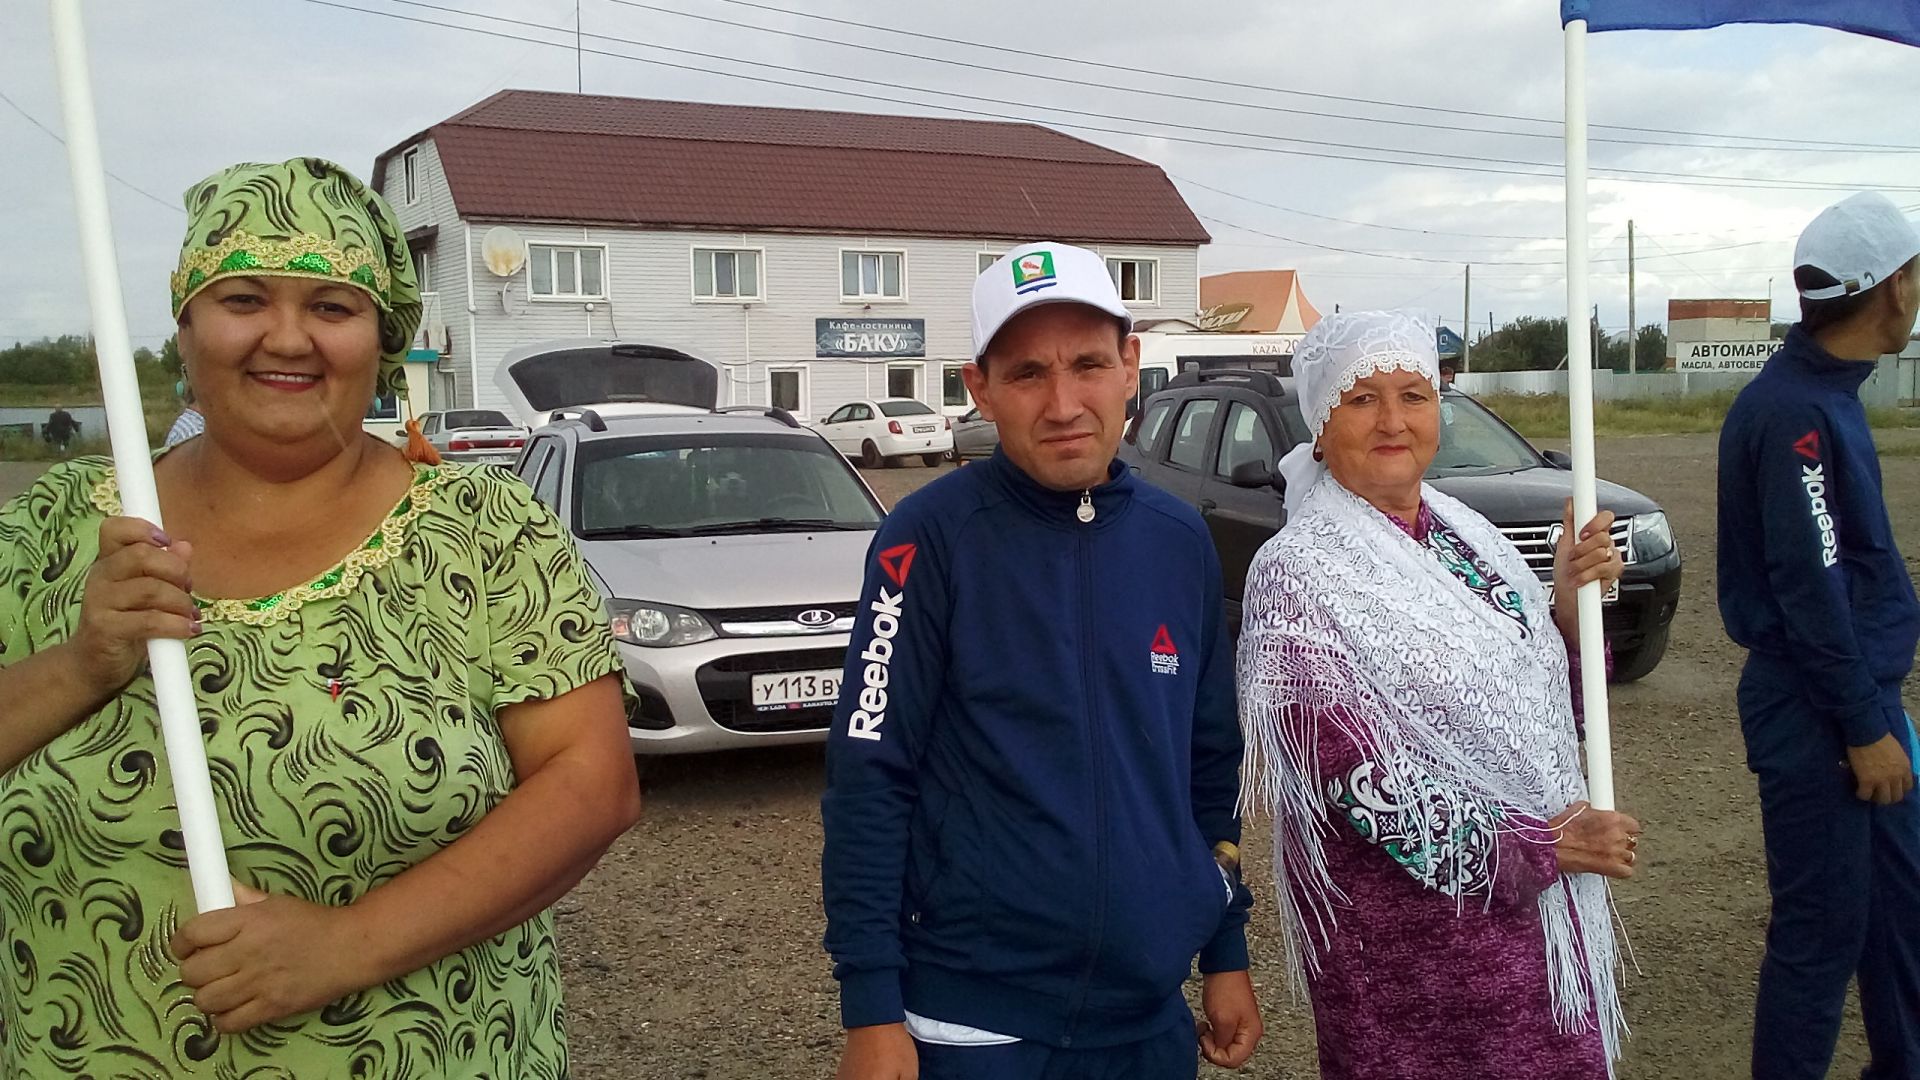 Зеленодольцы порадовали участников веломарафона Астана — Париж теплой встречой